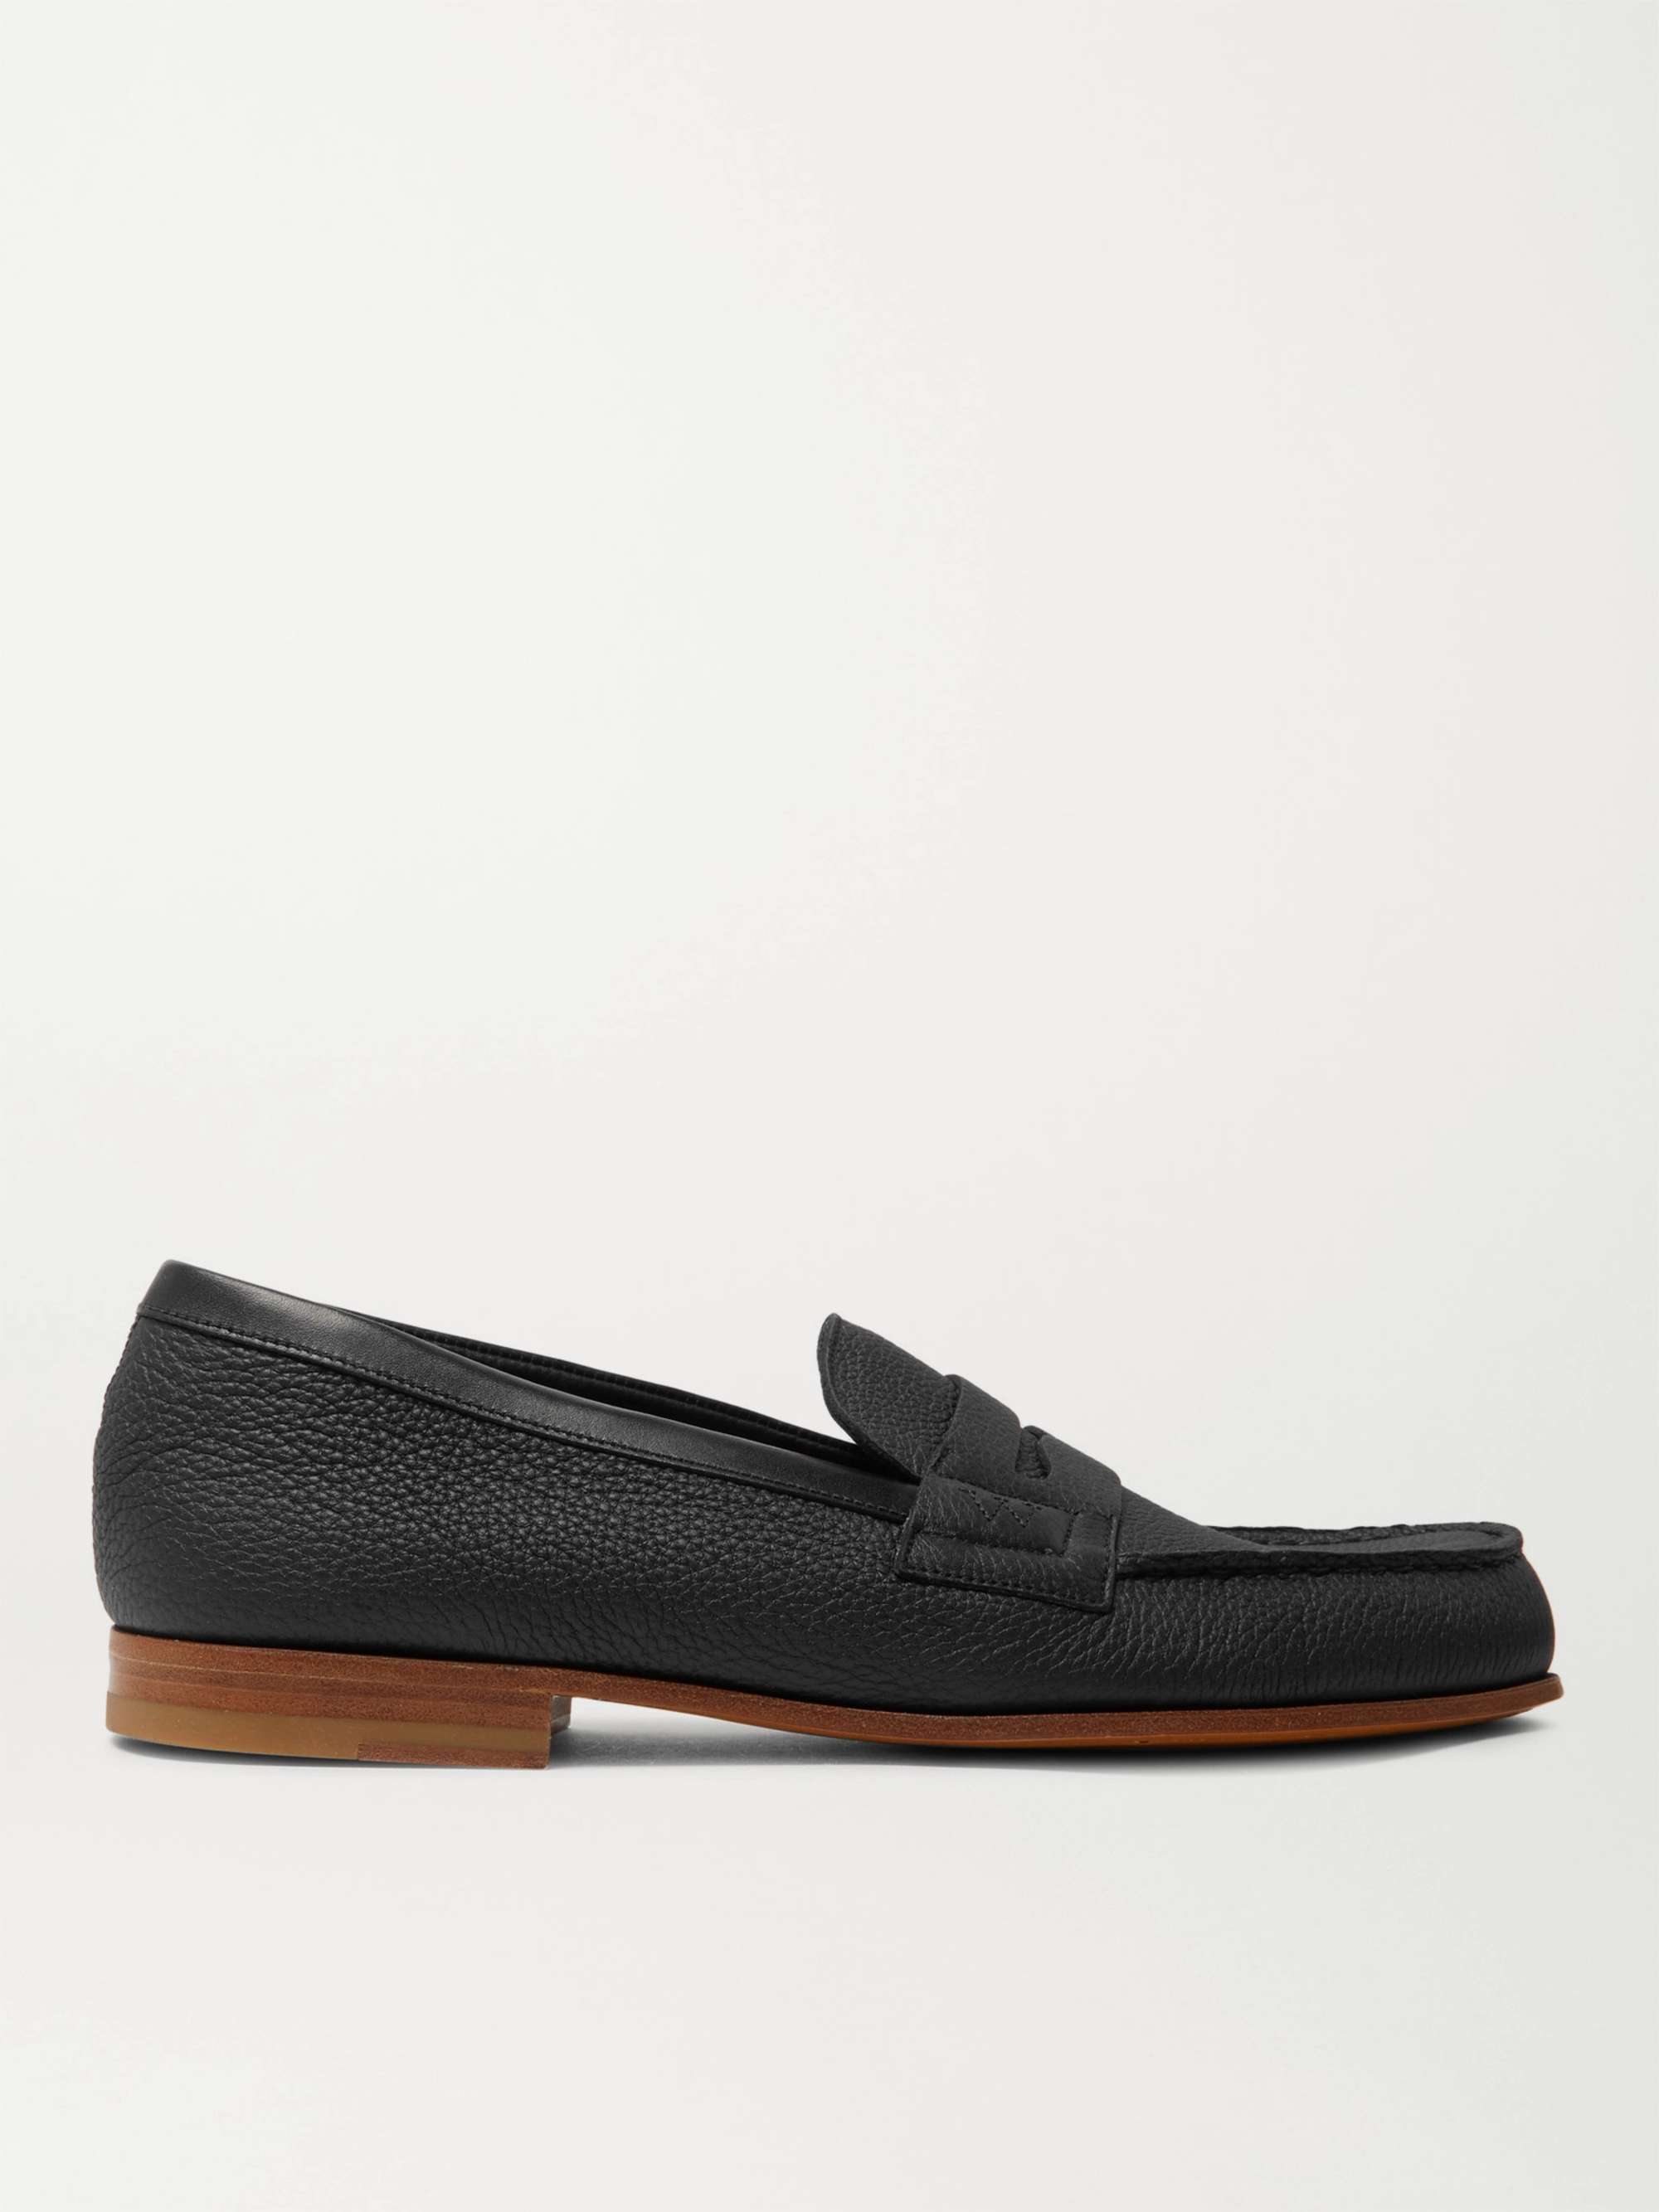 Black 281 Le Moc Pebble-Grain Leather Loafers | J.M. WESTON | MR PORTER